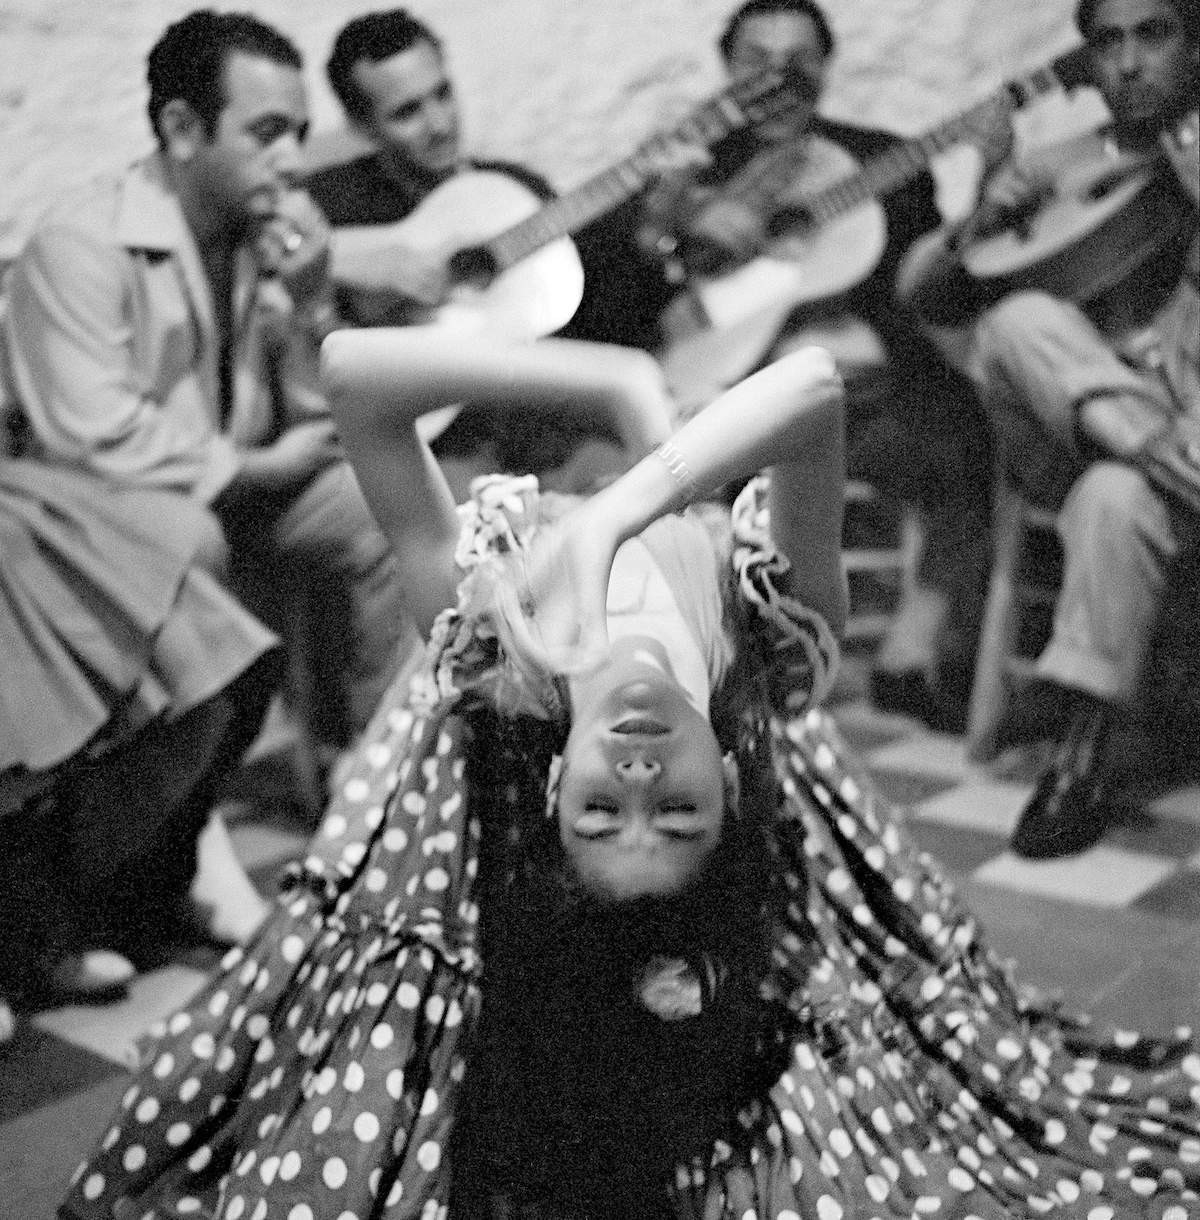 Цыганский танец в Сакромонте, Испания, 1956. Фотограф Пьерджорджо Бранци